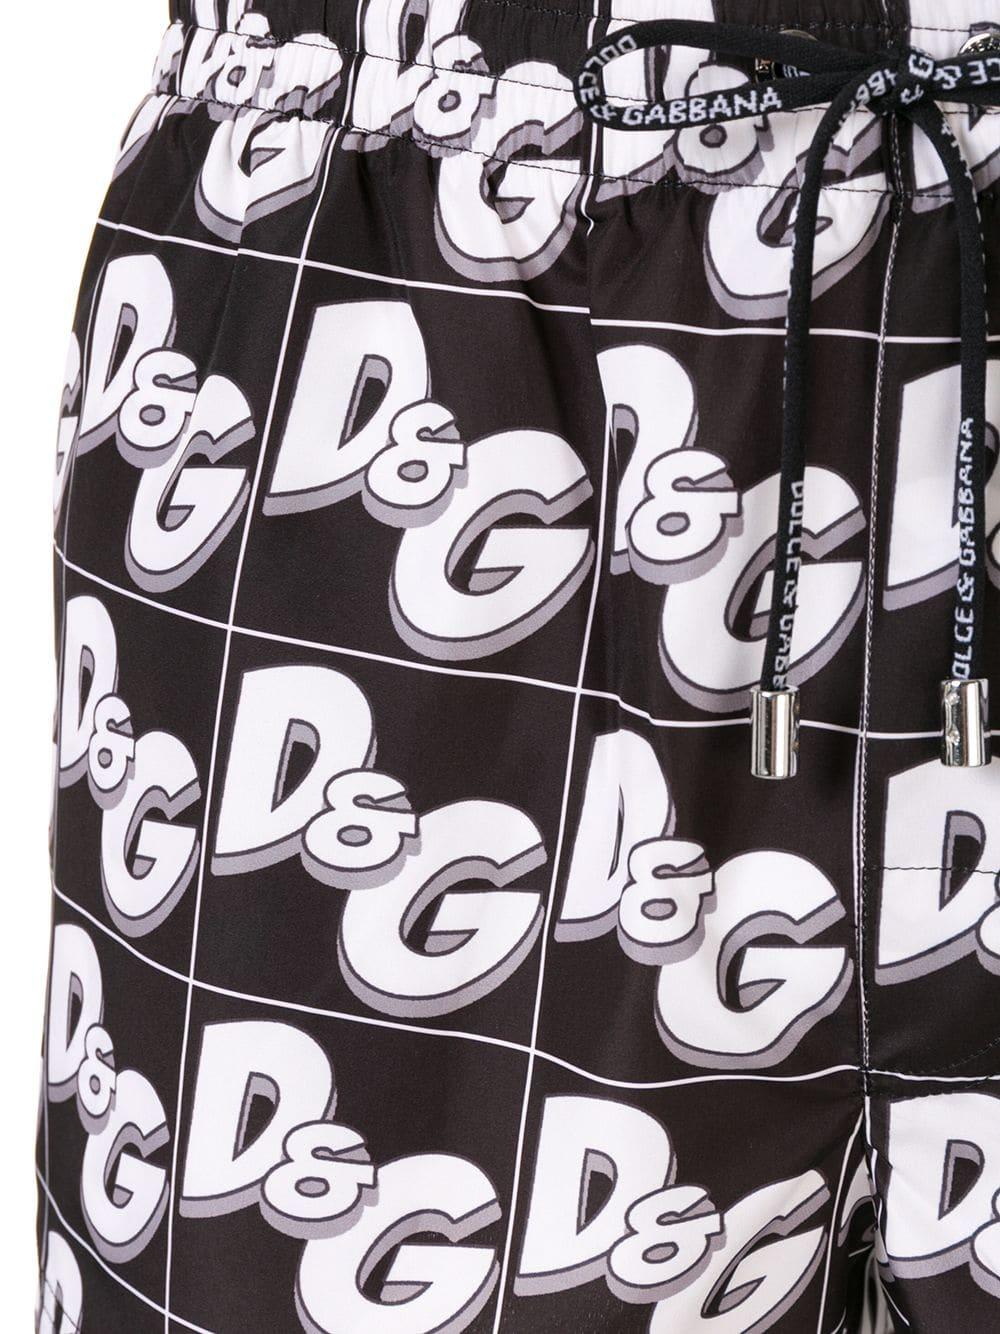 Dolce & Gabbana Monogram Swim Shorts in Black for Men - Lyst